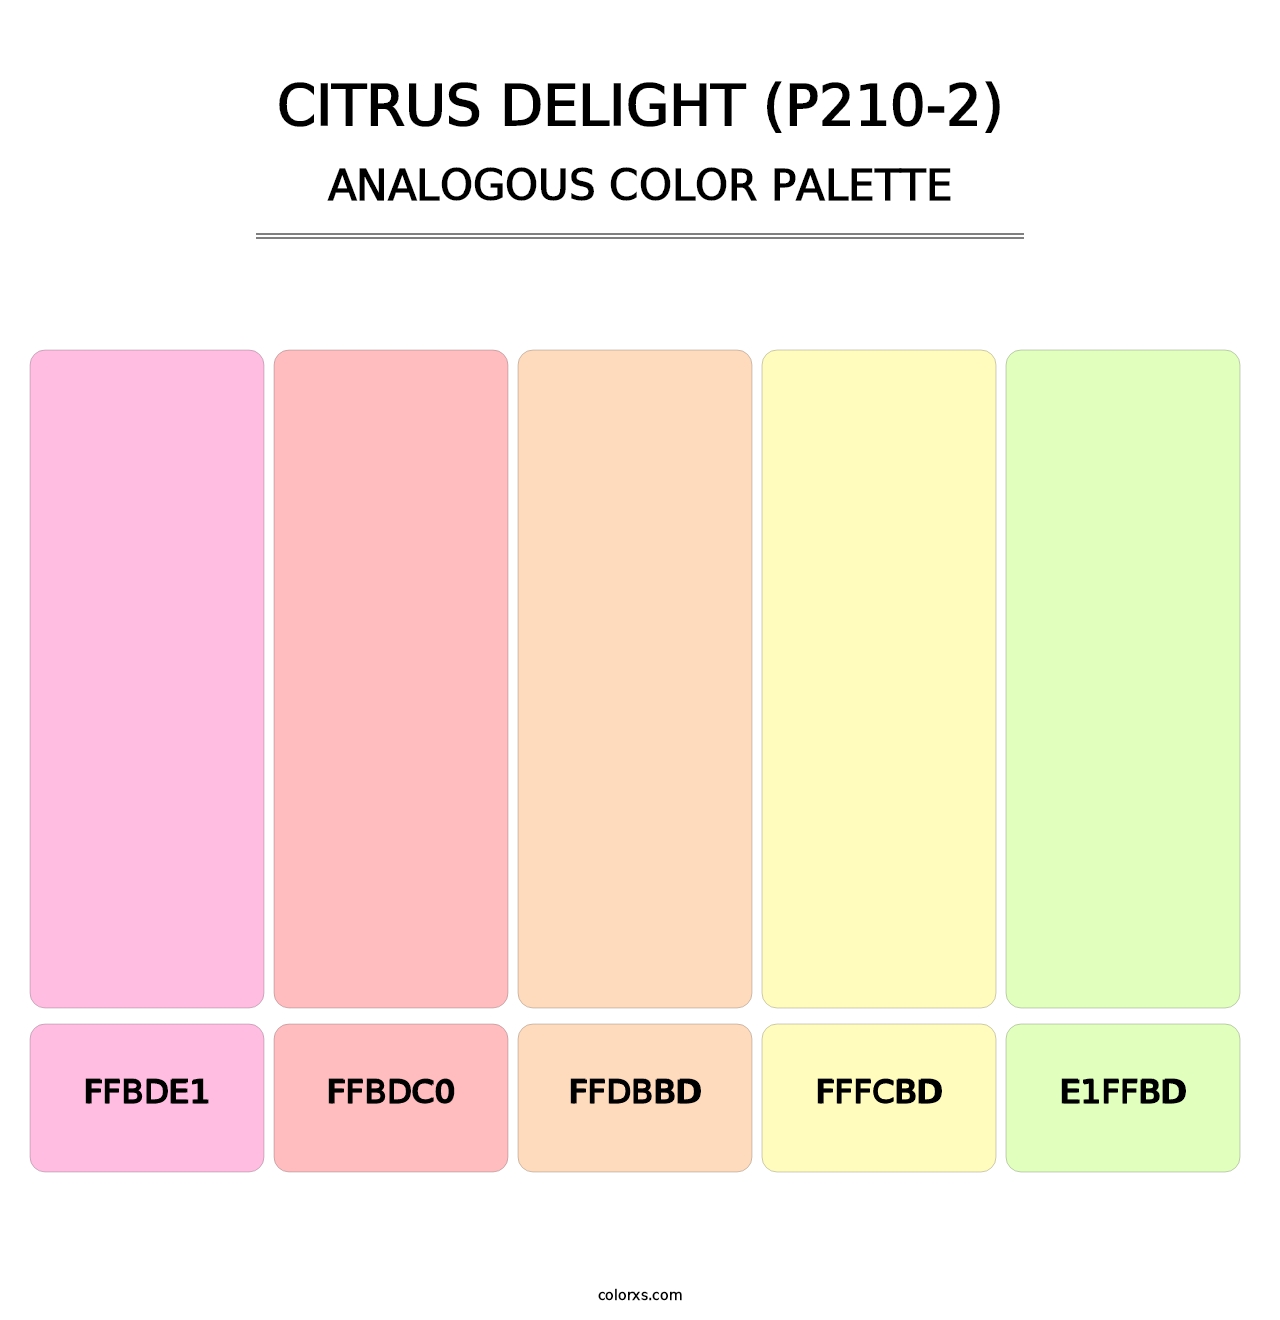 Citrus Delight (P210-2) - Analogous Color Palette